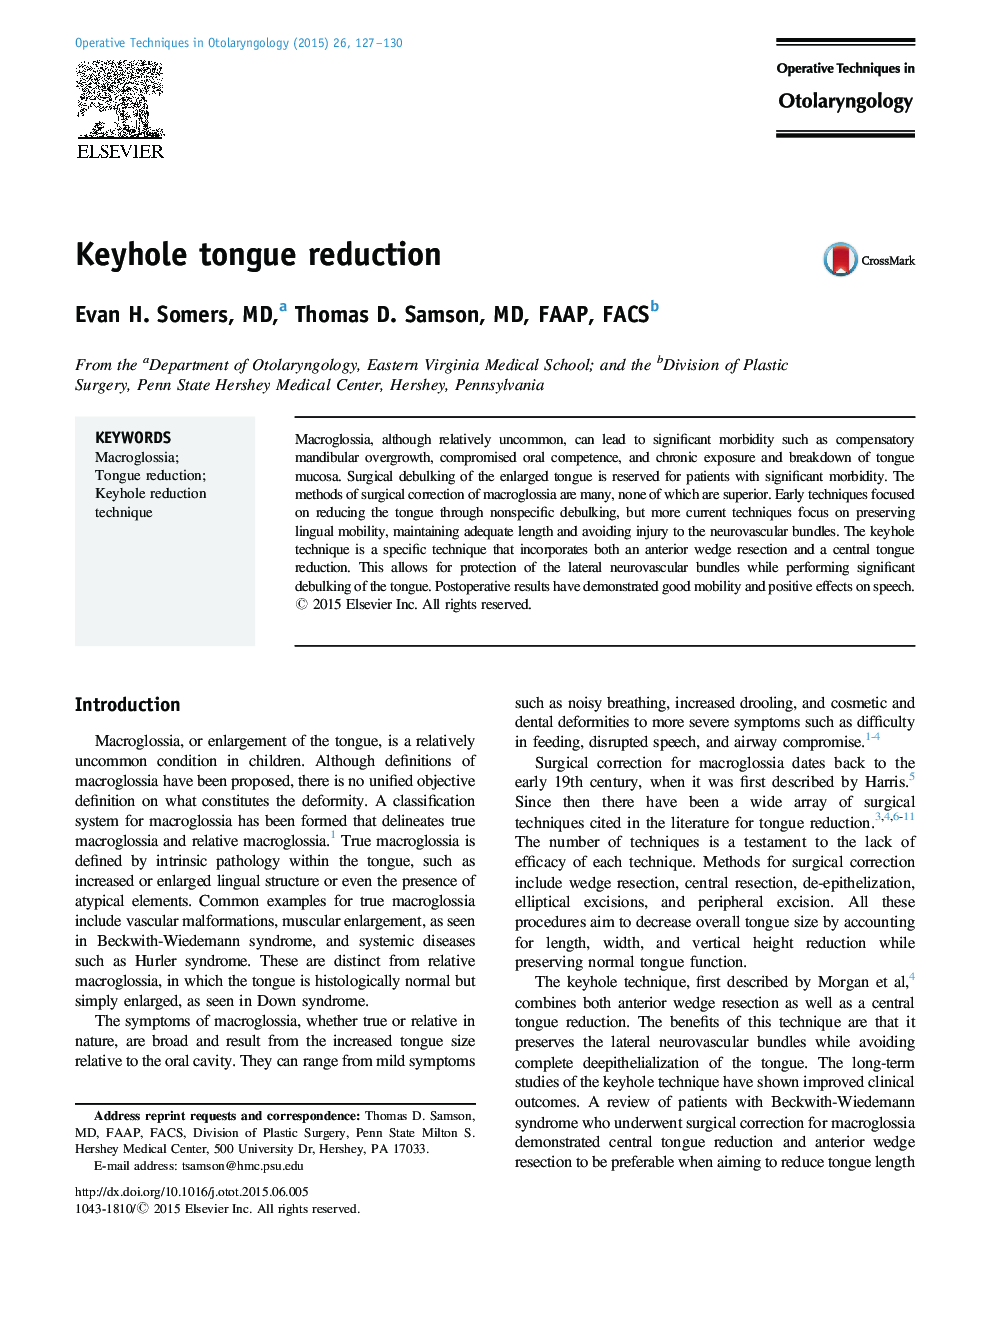 Keyhole tongue reduction